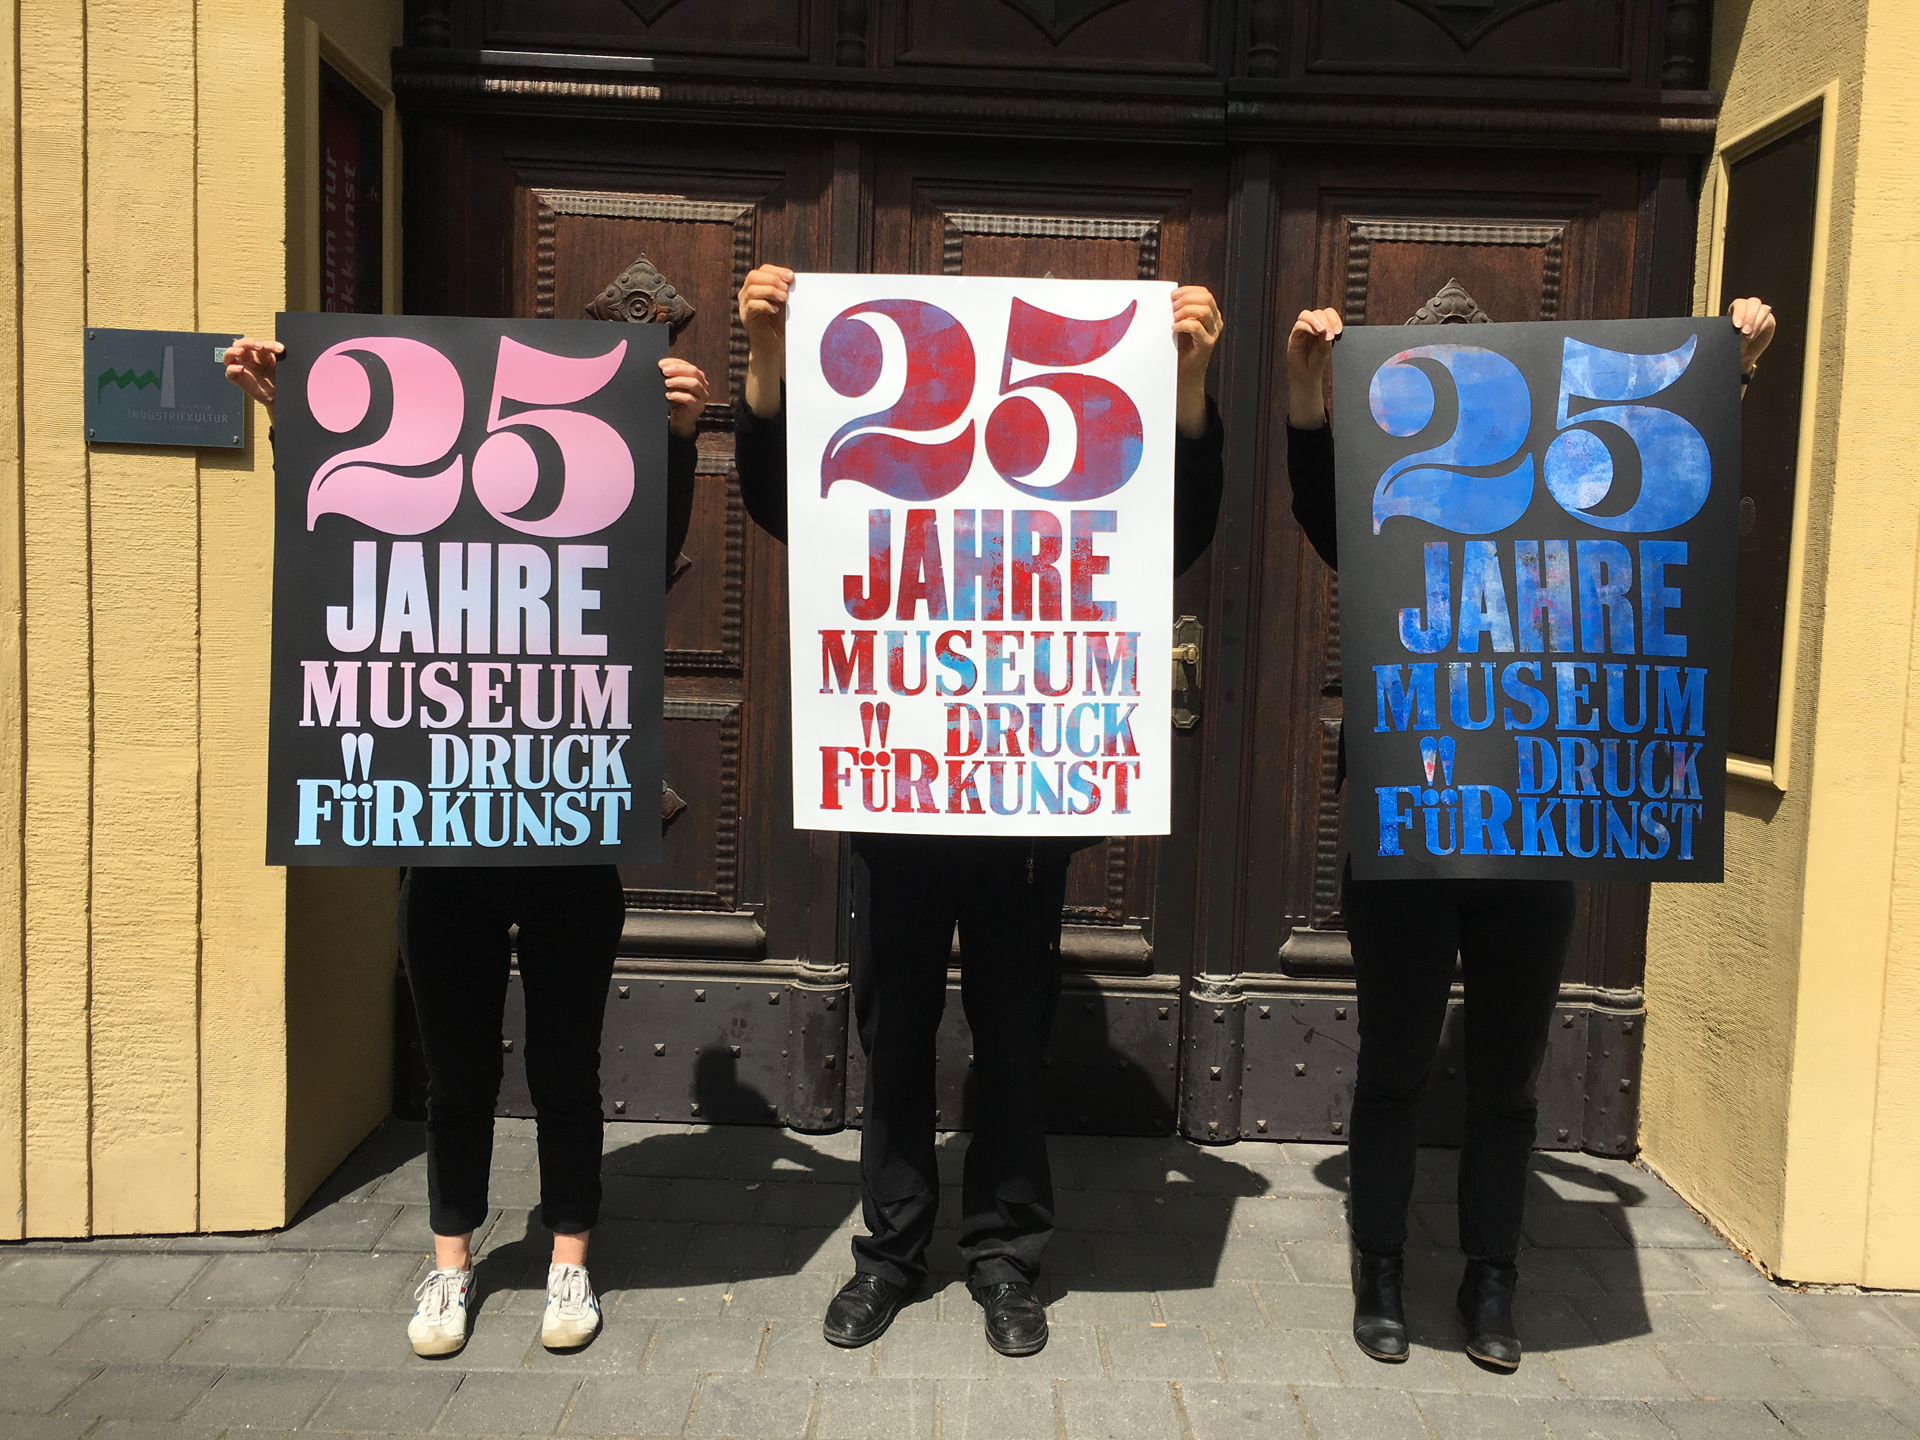 Das Museum für Druckkunst Leipzig feierte sein 25-jähriges Bestehen